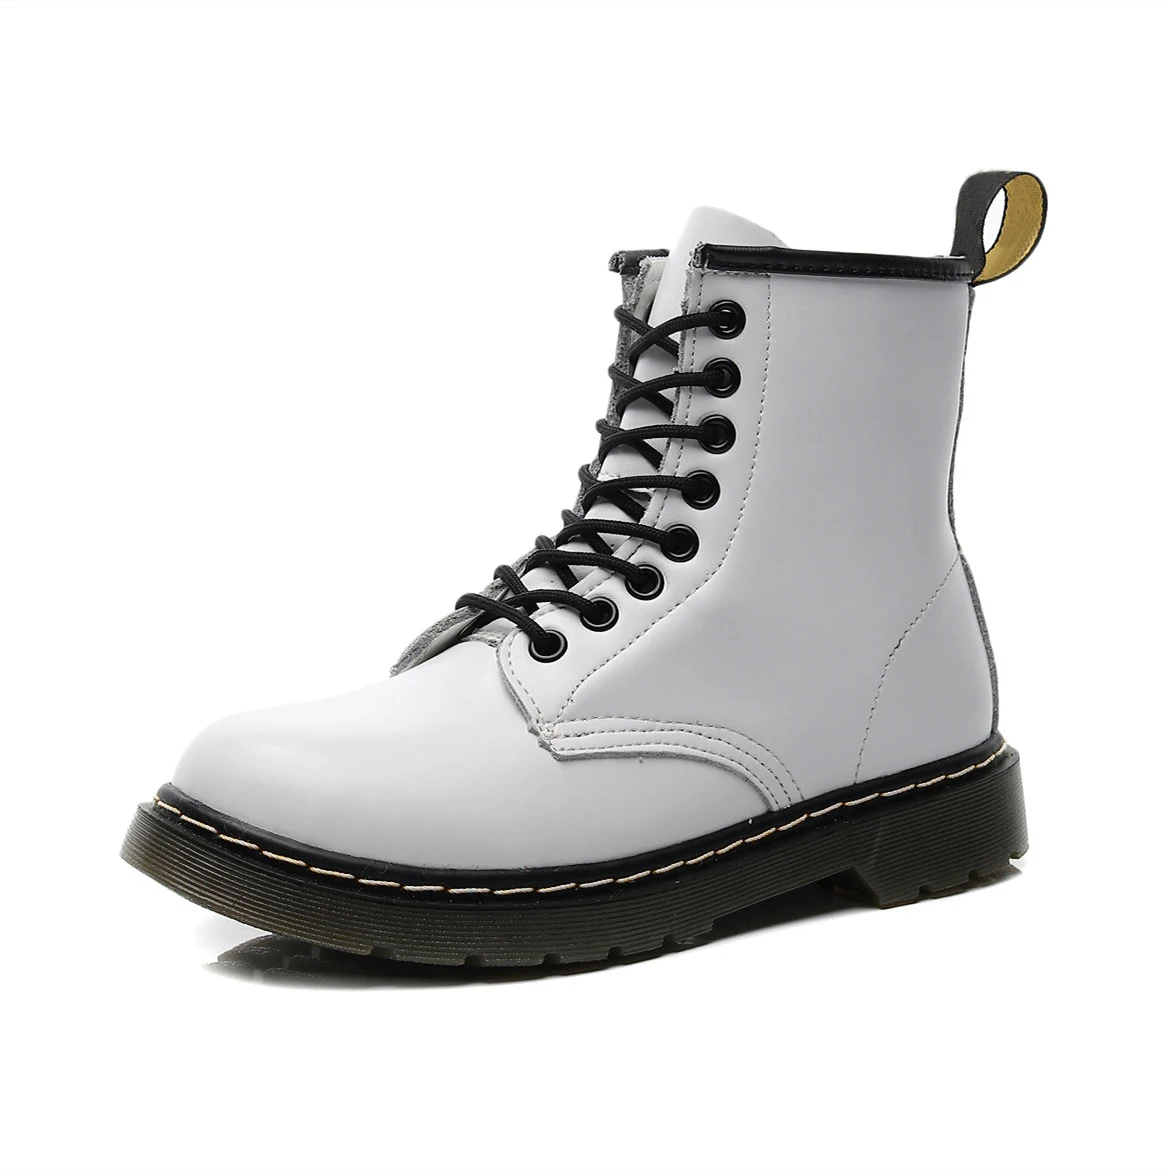 Vastwave/кожаные мужские Ботинки martin для влюбленных Мужская обувь мотоботы для взрослых зимняя обувь мужская обувь размера плюс 47 48 - Цвет: White1460-4